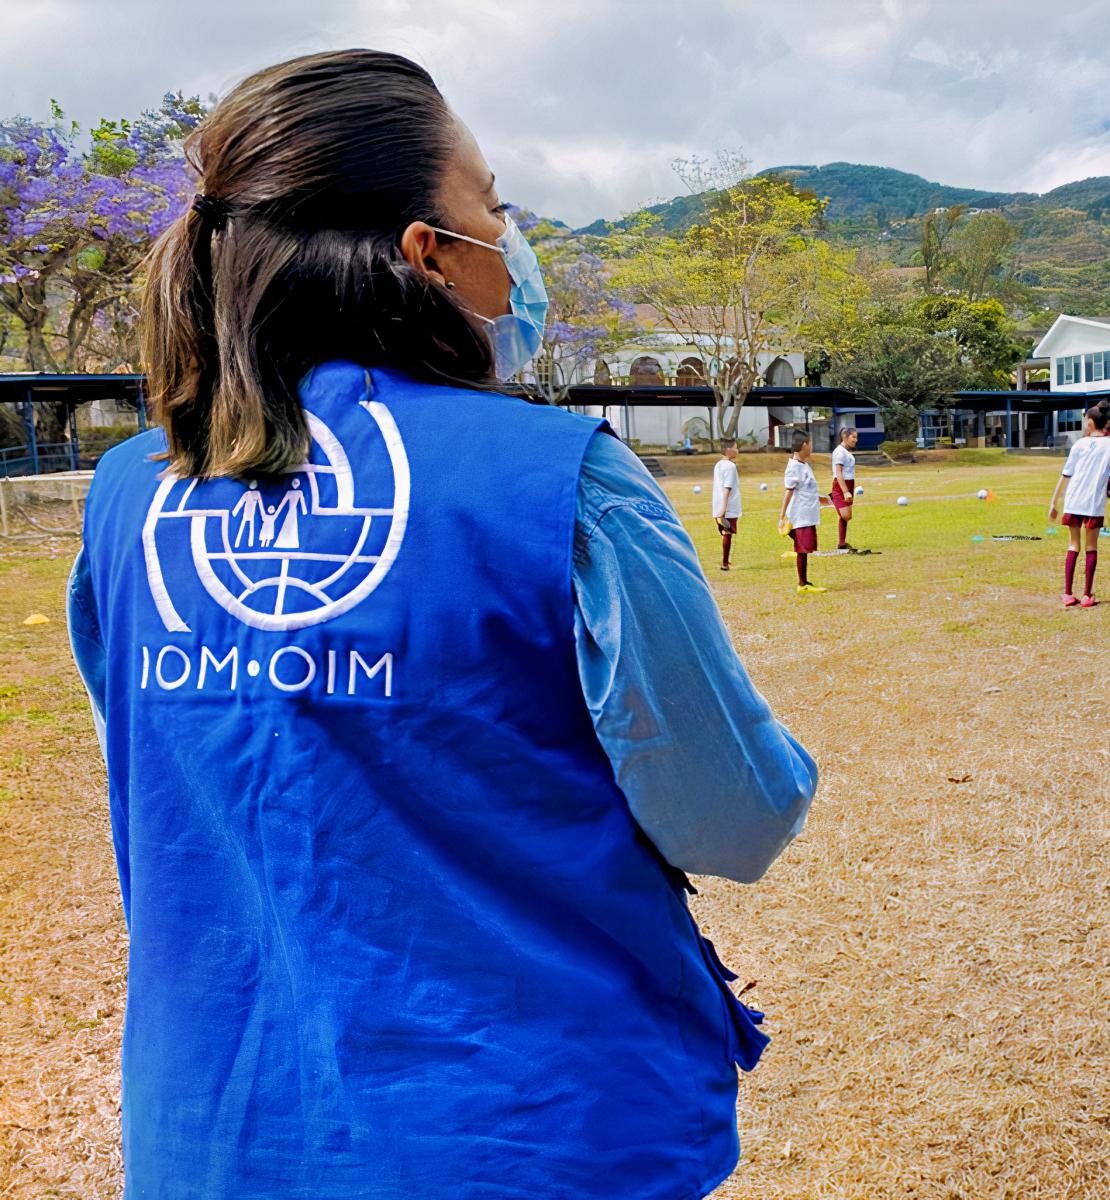 امرأة ترتدي سترة المنظمة الدولية للهجرة تنظر إلى ملعب كرة قدم حيث يلعب العديد من الأطفال.